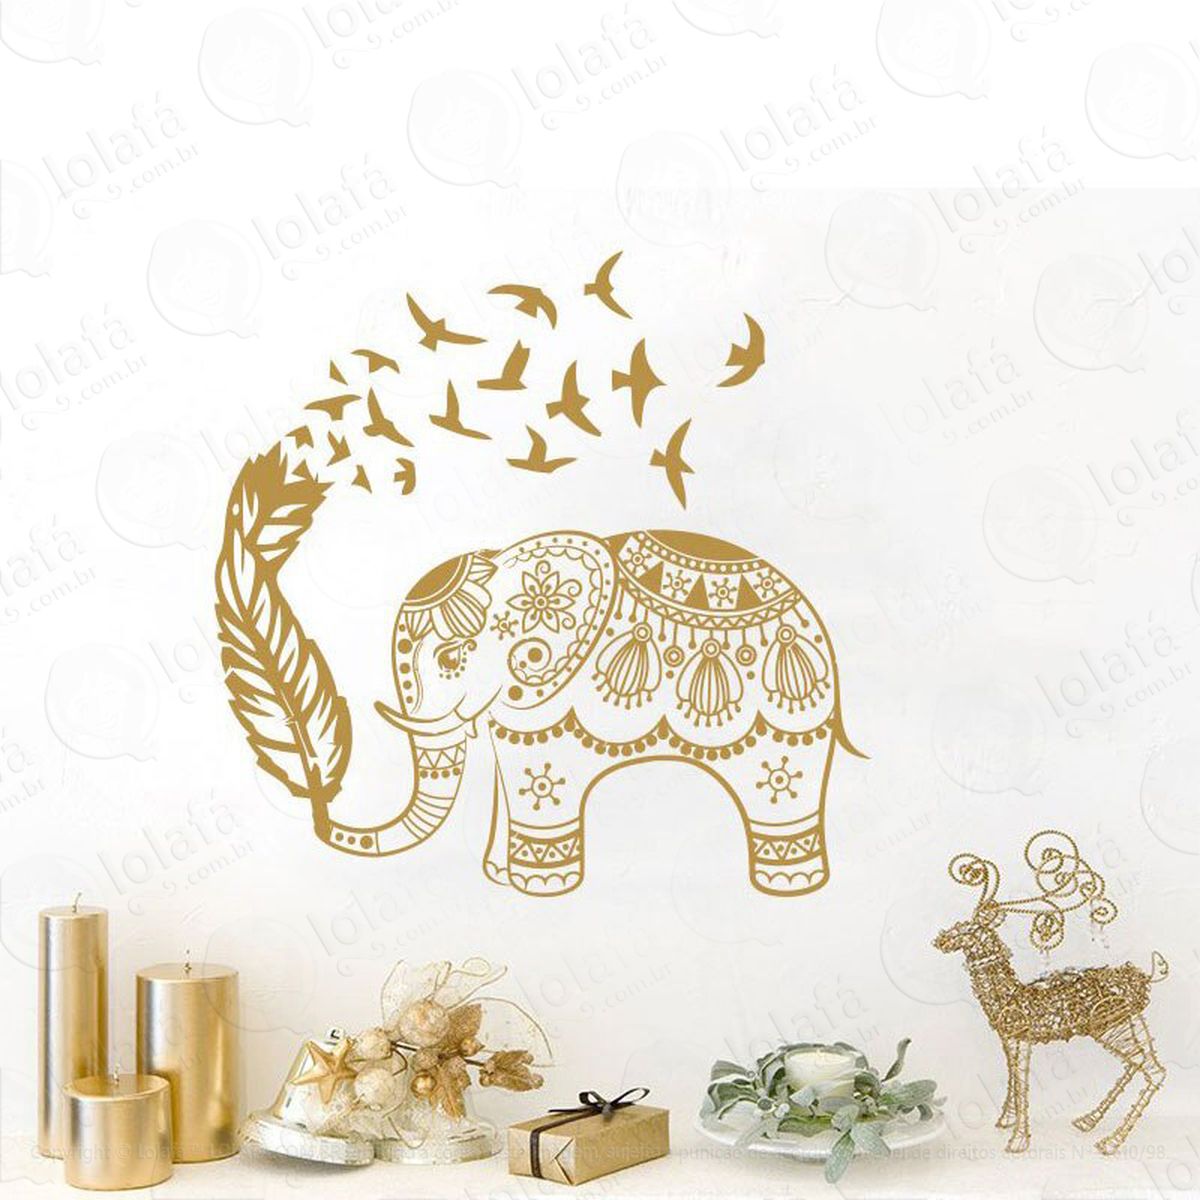 mandala elefante e pássaros para cultivar a riqueza e liberdade adesivo de parede decorativo para casa, quarto, sala e vidro - mod:314